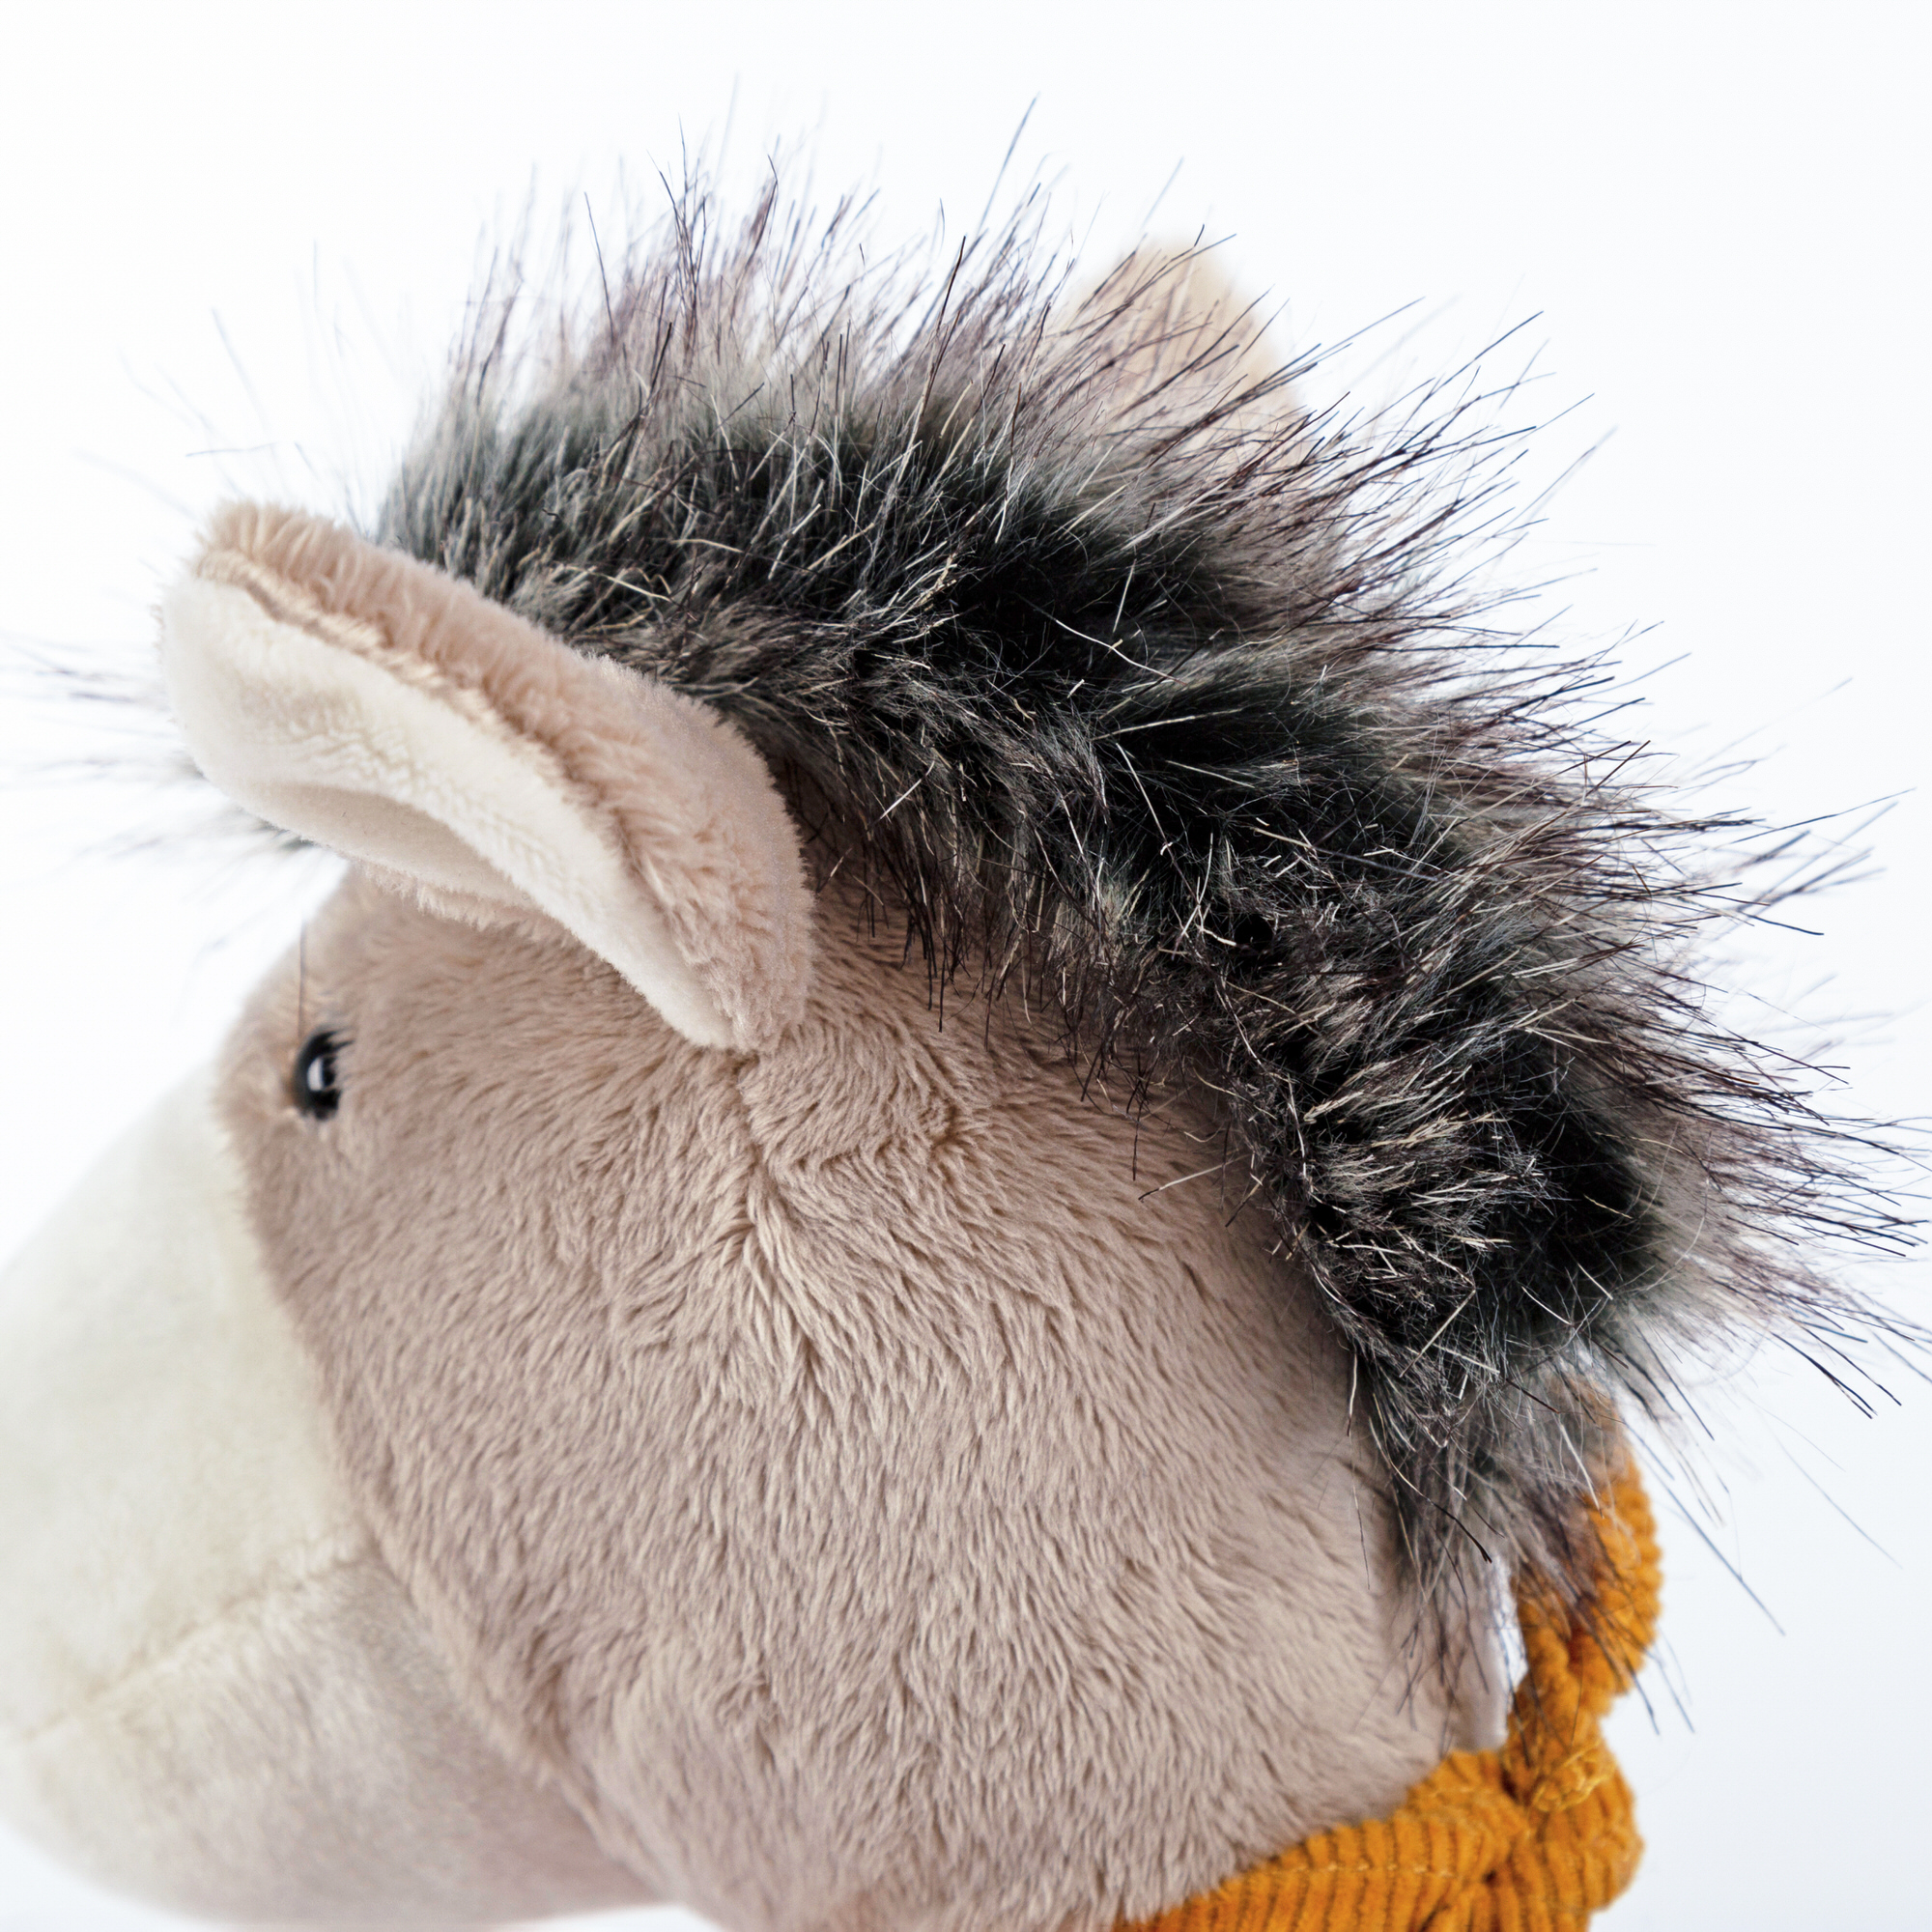 Patchwork soft toy donkey